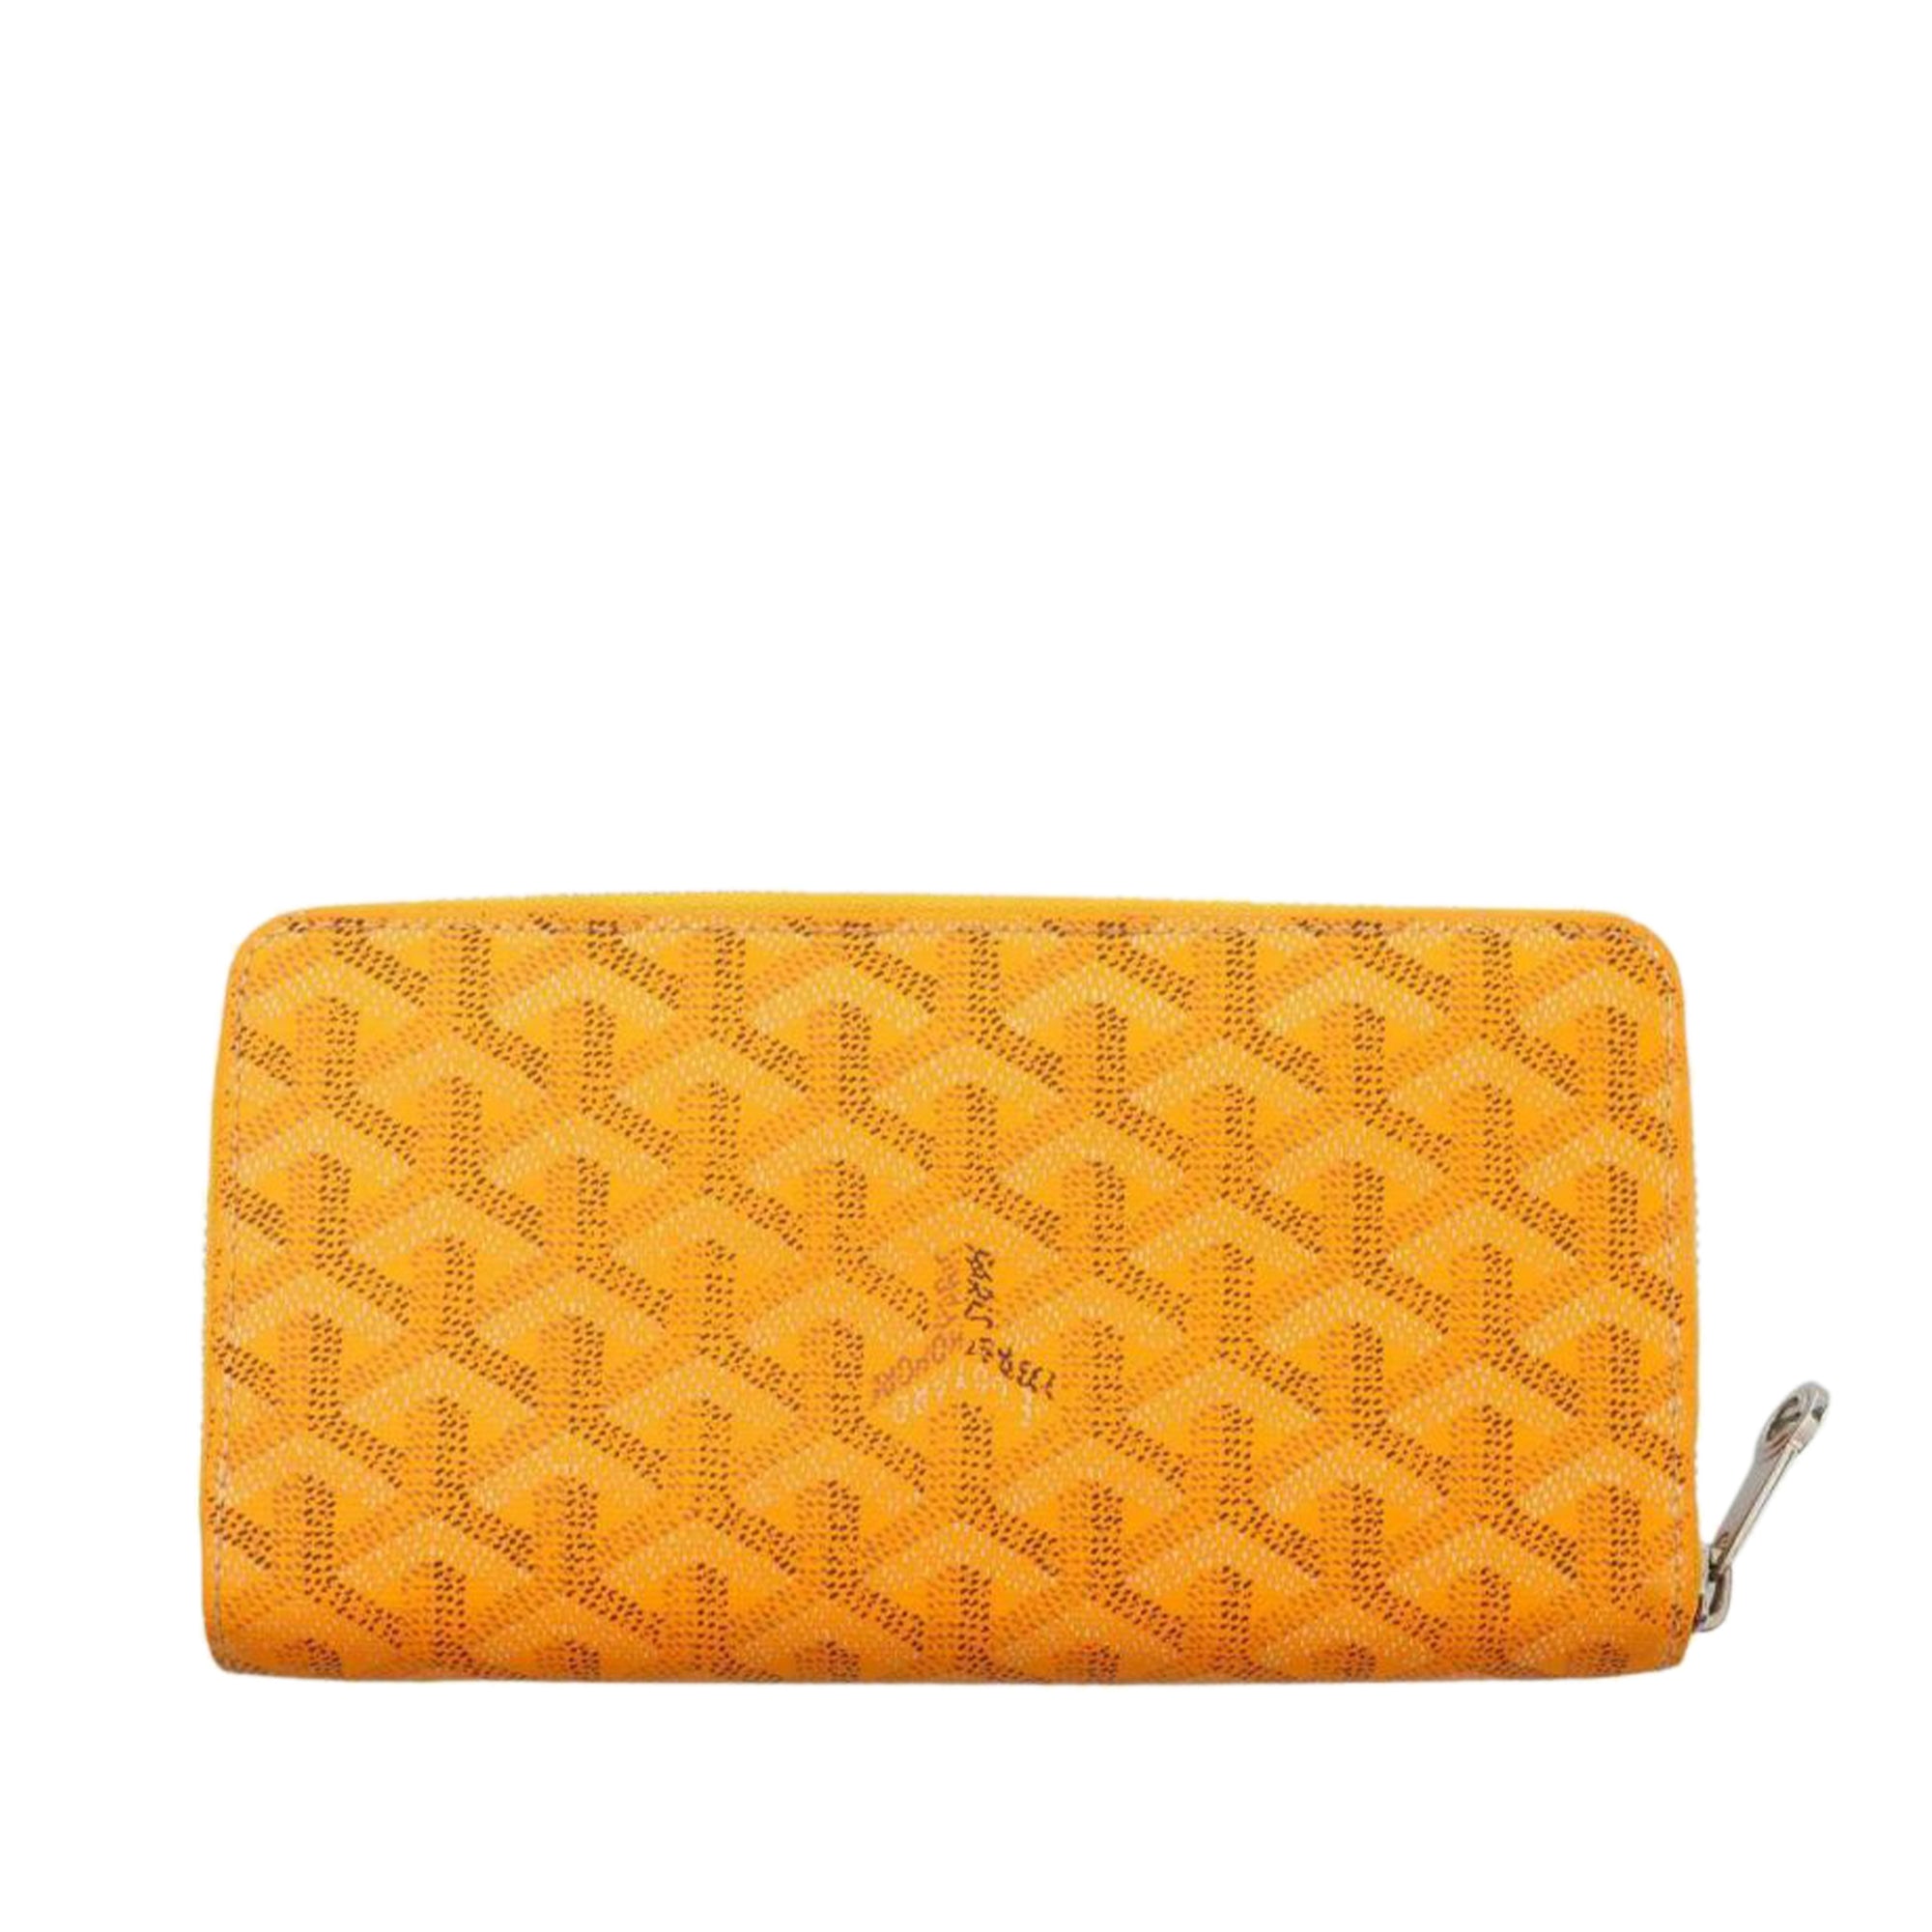 Goyard, Bags, Goyard Matignon Gm Wallet Brand New